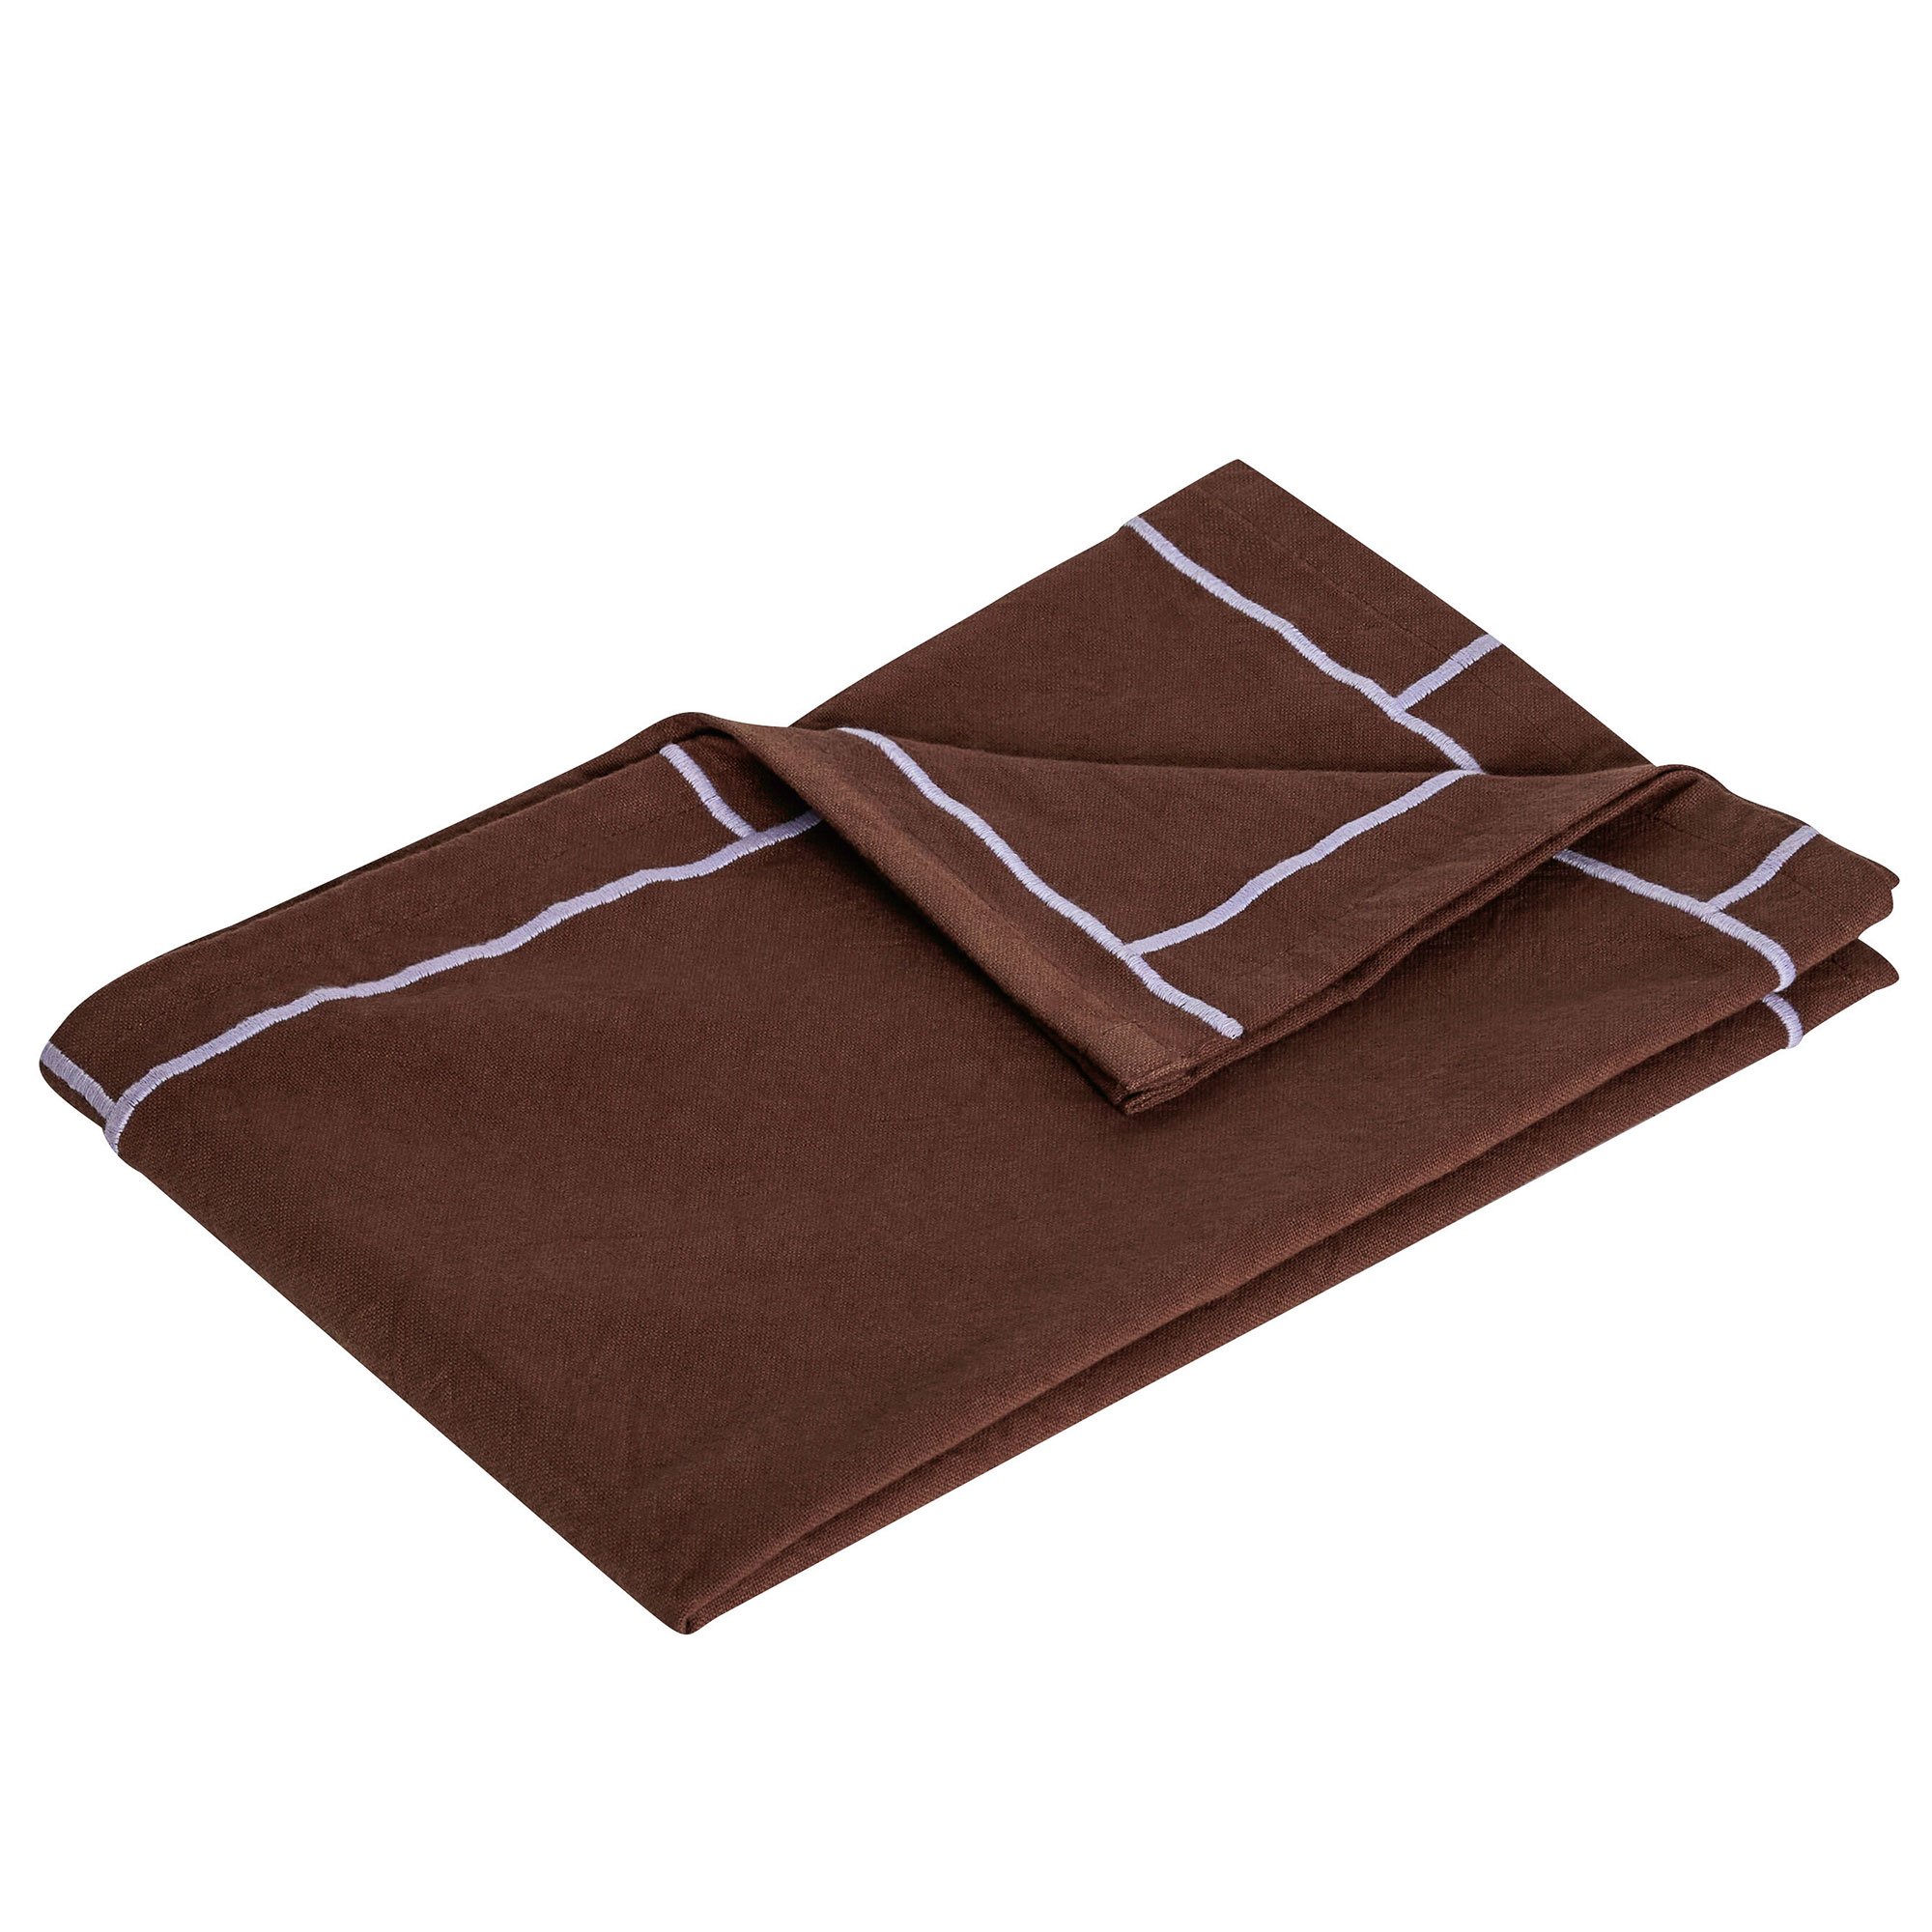 Hübsch Easypeasy kjøkkenhåndkle brun/lilla